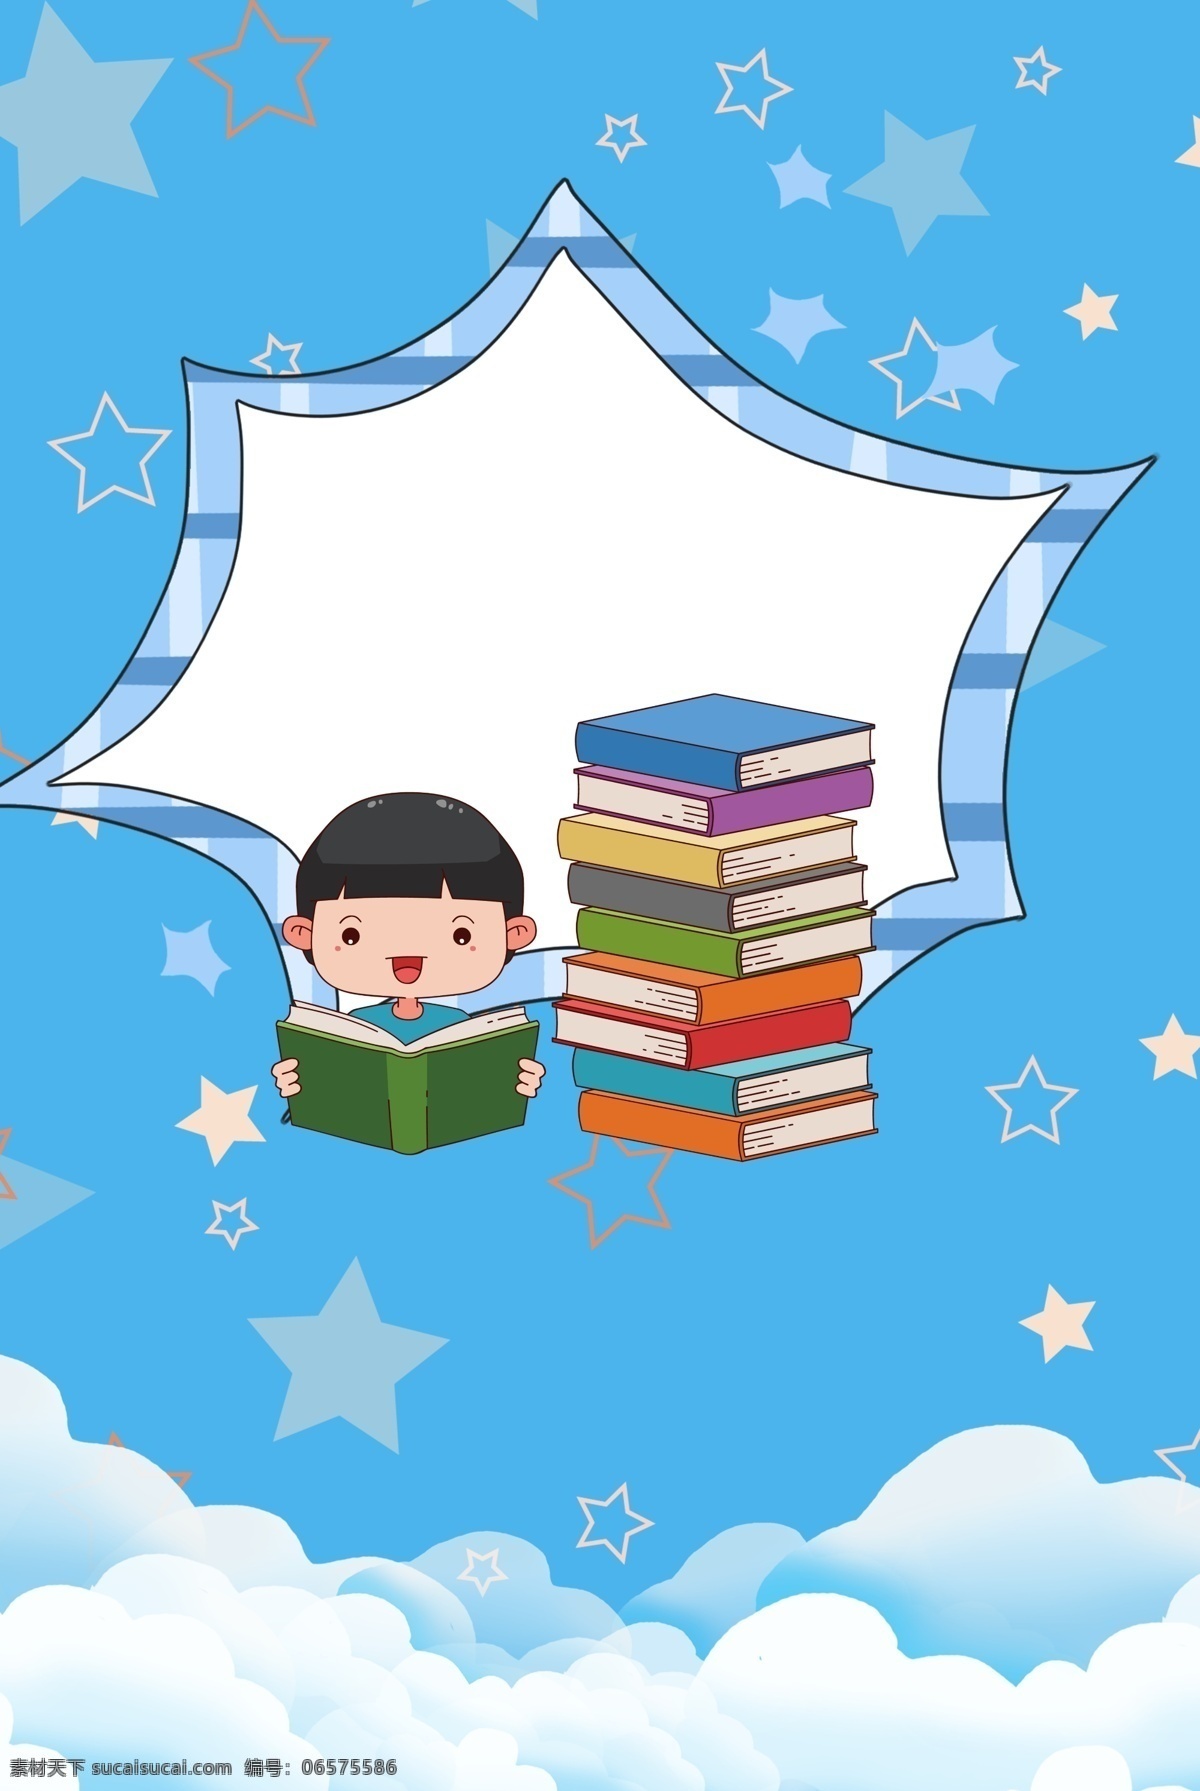 蓝色 几何 简约 卡通 儿童 图书 日 背景 海报 国际 儿童图书日 阅读 读书 看书 蓝色背景 线条 扁平 可爱对话框